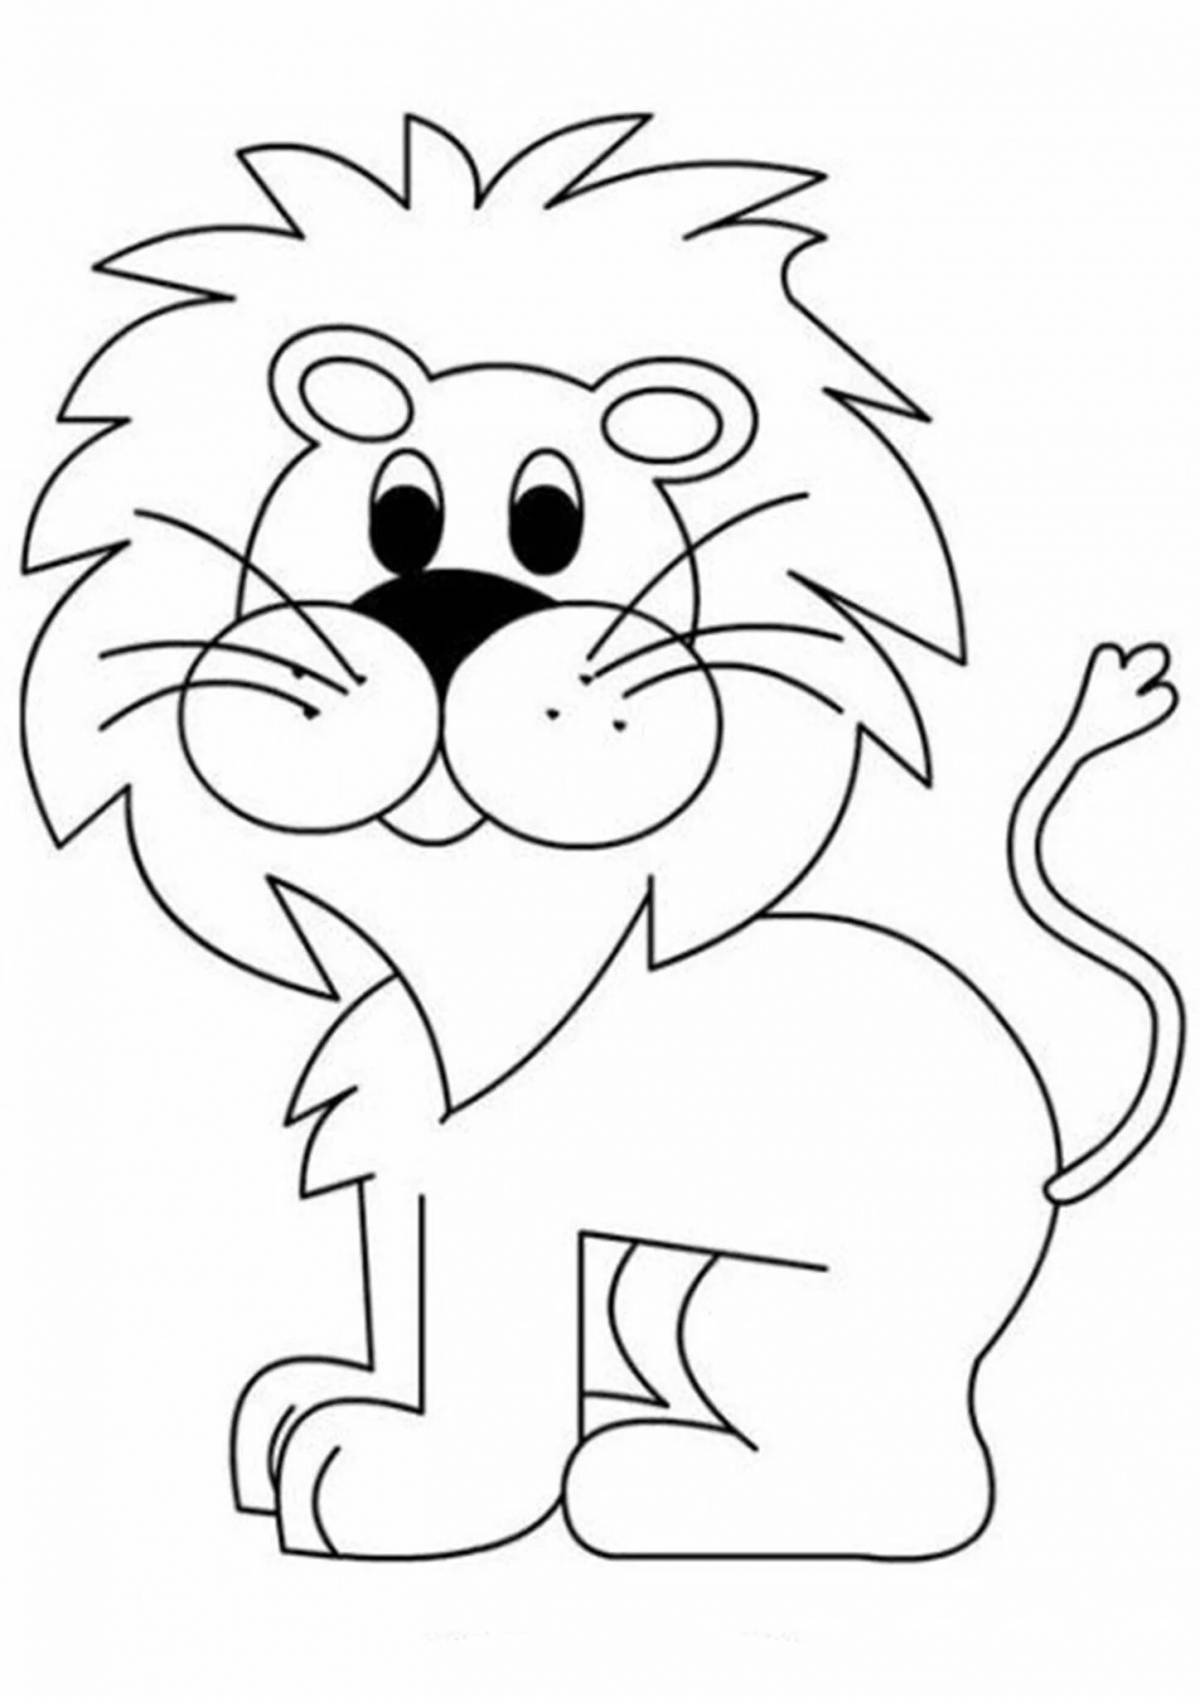 Изысканный рисунок льва для детей